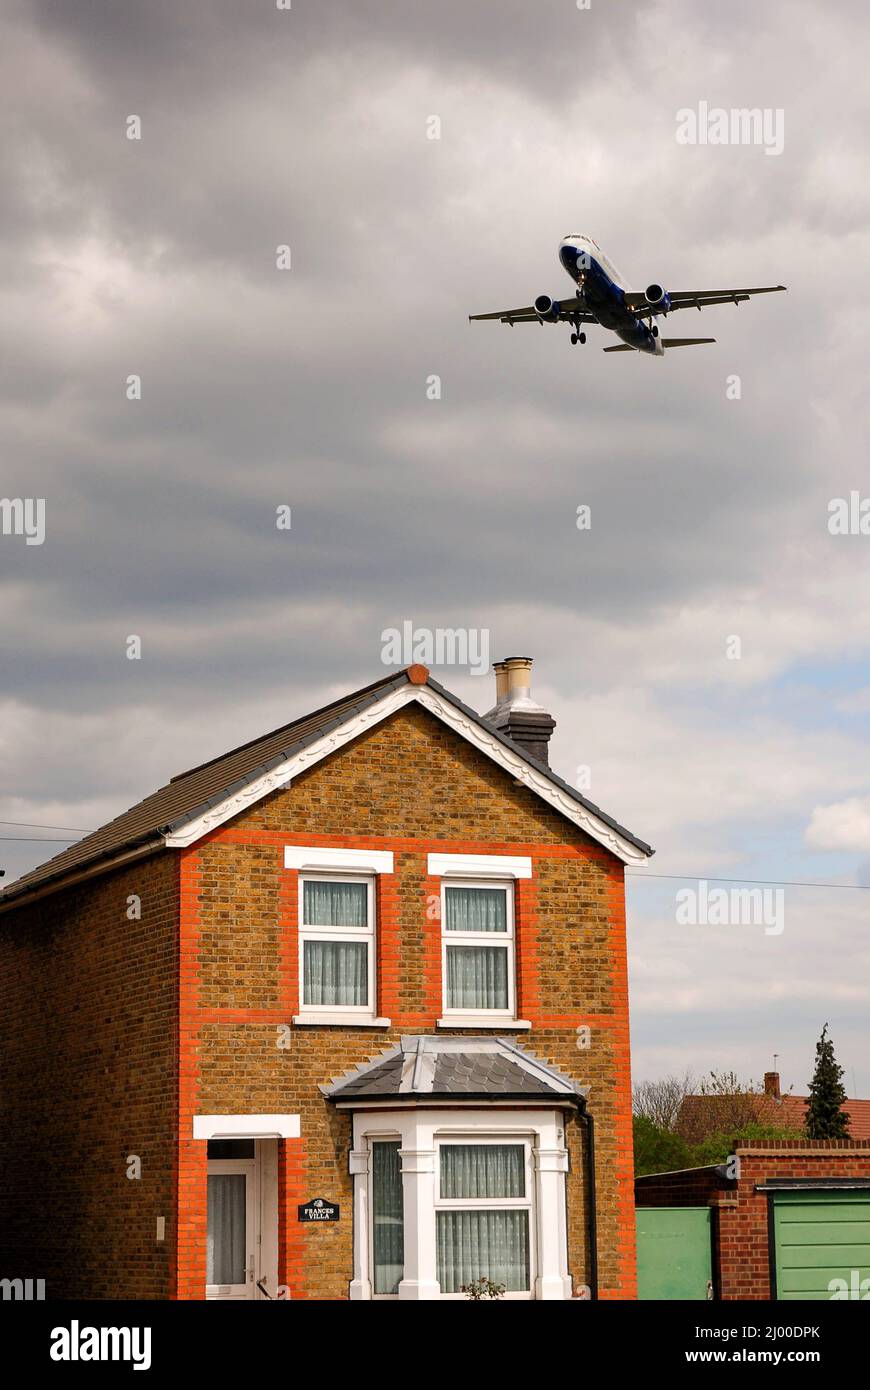 Londra, Inghilterra - Aprile 2007: Volo a basso getto che passa sopra una casa sul percorso di volo per l'aeroporto di Londra Heathrow Foto Stock